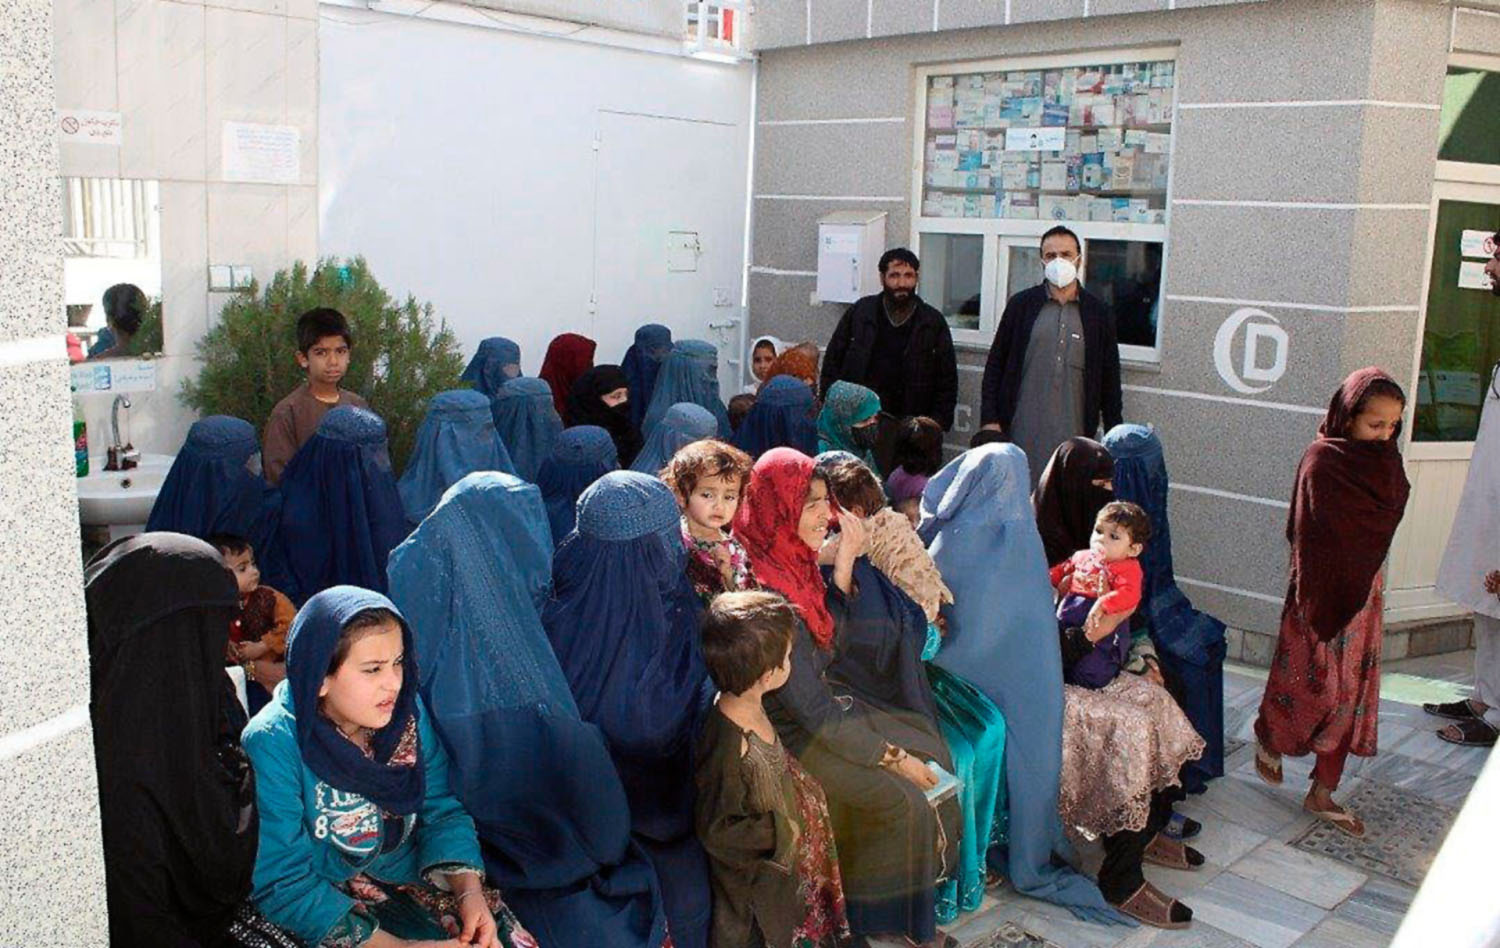 Von Beginn an begleitet "Der Hausarzt" die Klinik Dewanbegi im Westen Kabuls, die seit 2016 Zehntausende bedürftige Afghanen behandelt hat. Wie sieht der Klinikalltag jetzt nach zwei Jahren Pandemie und der Machtübernahme durch die Taliban aus?